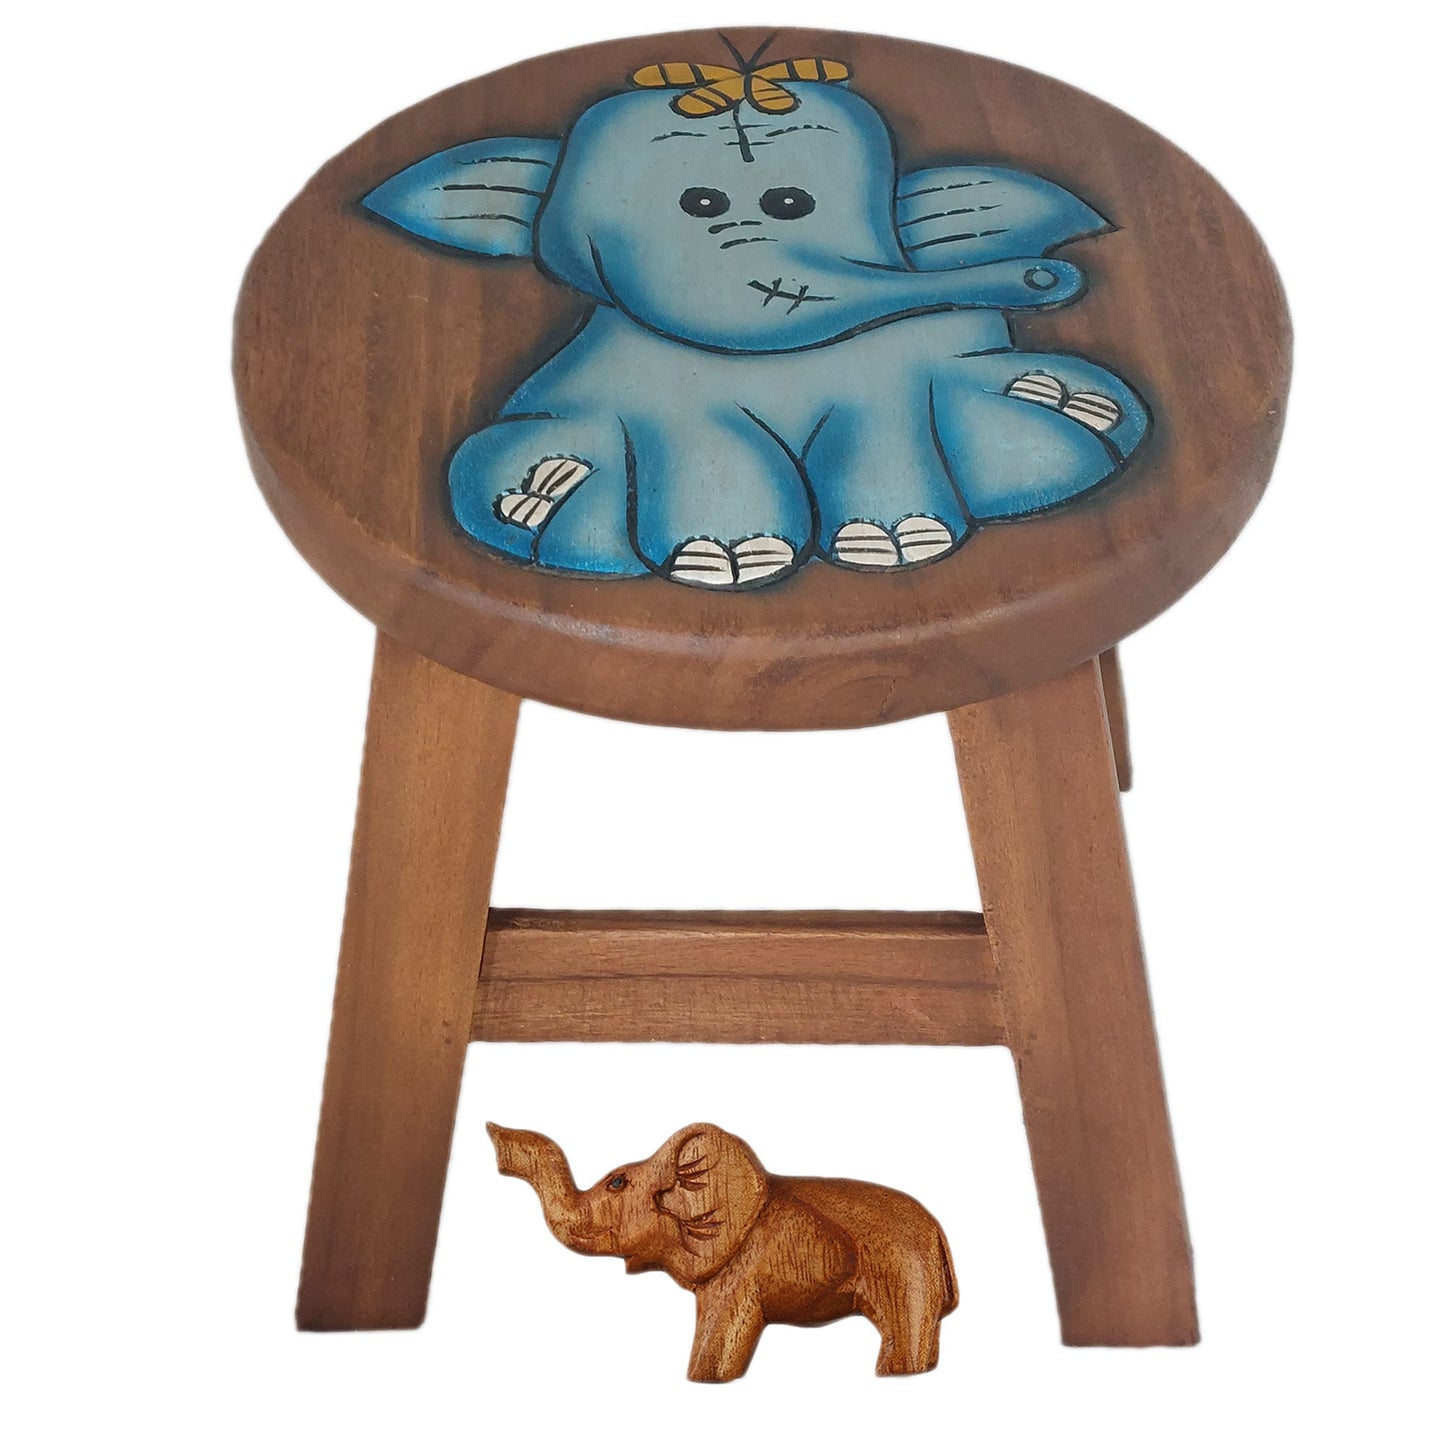 Children's stool wooden step stool flower stool blue elephant